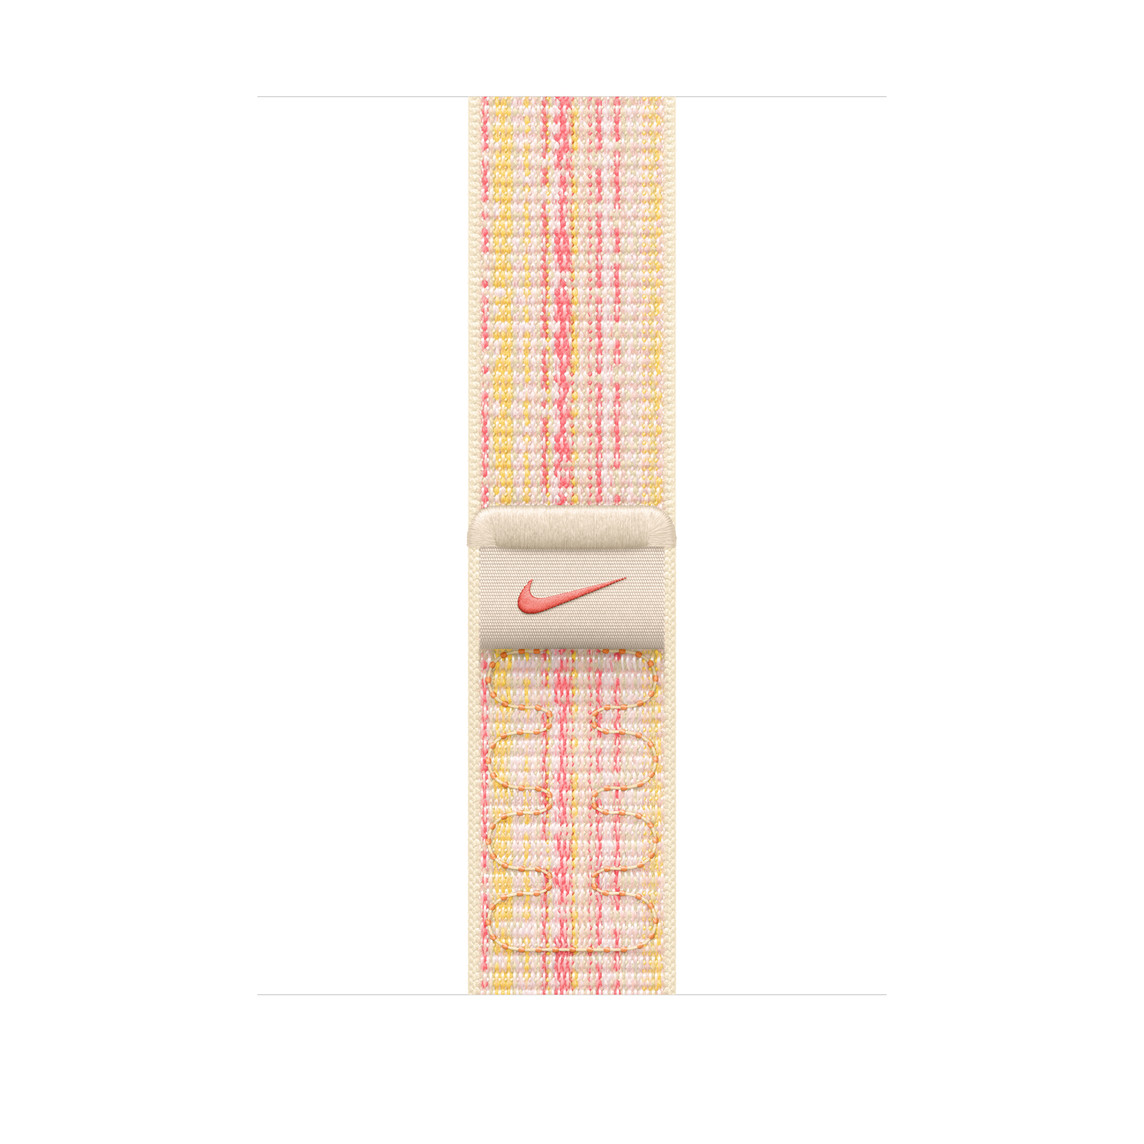 Correa loop deportiva blanco estelar/rosado hecha de nylon tejido con el Swoosh de Nike y cierre adhesivo ajustable